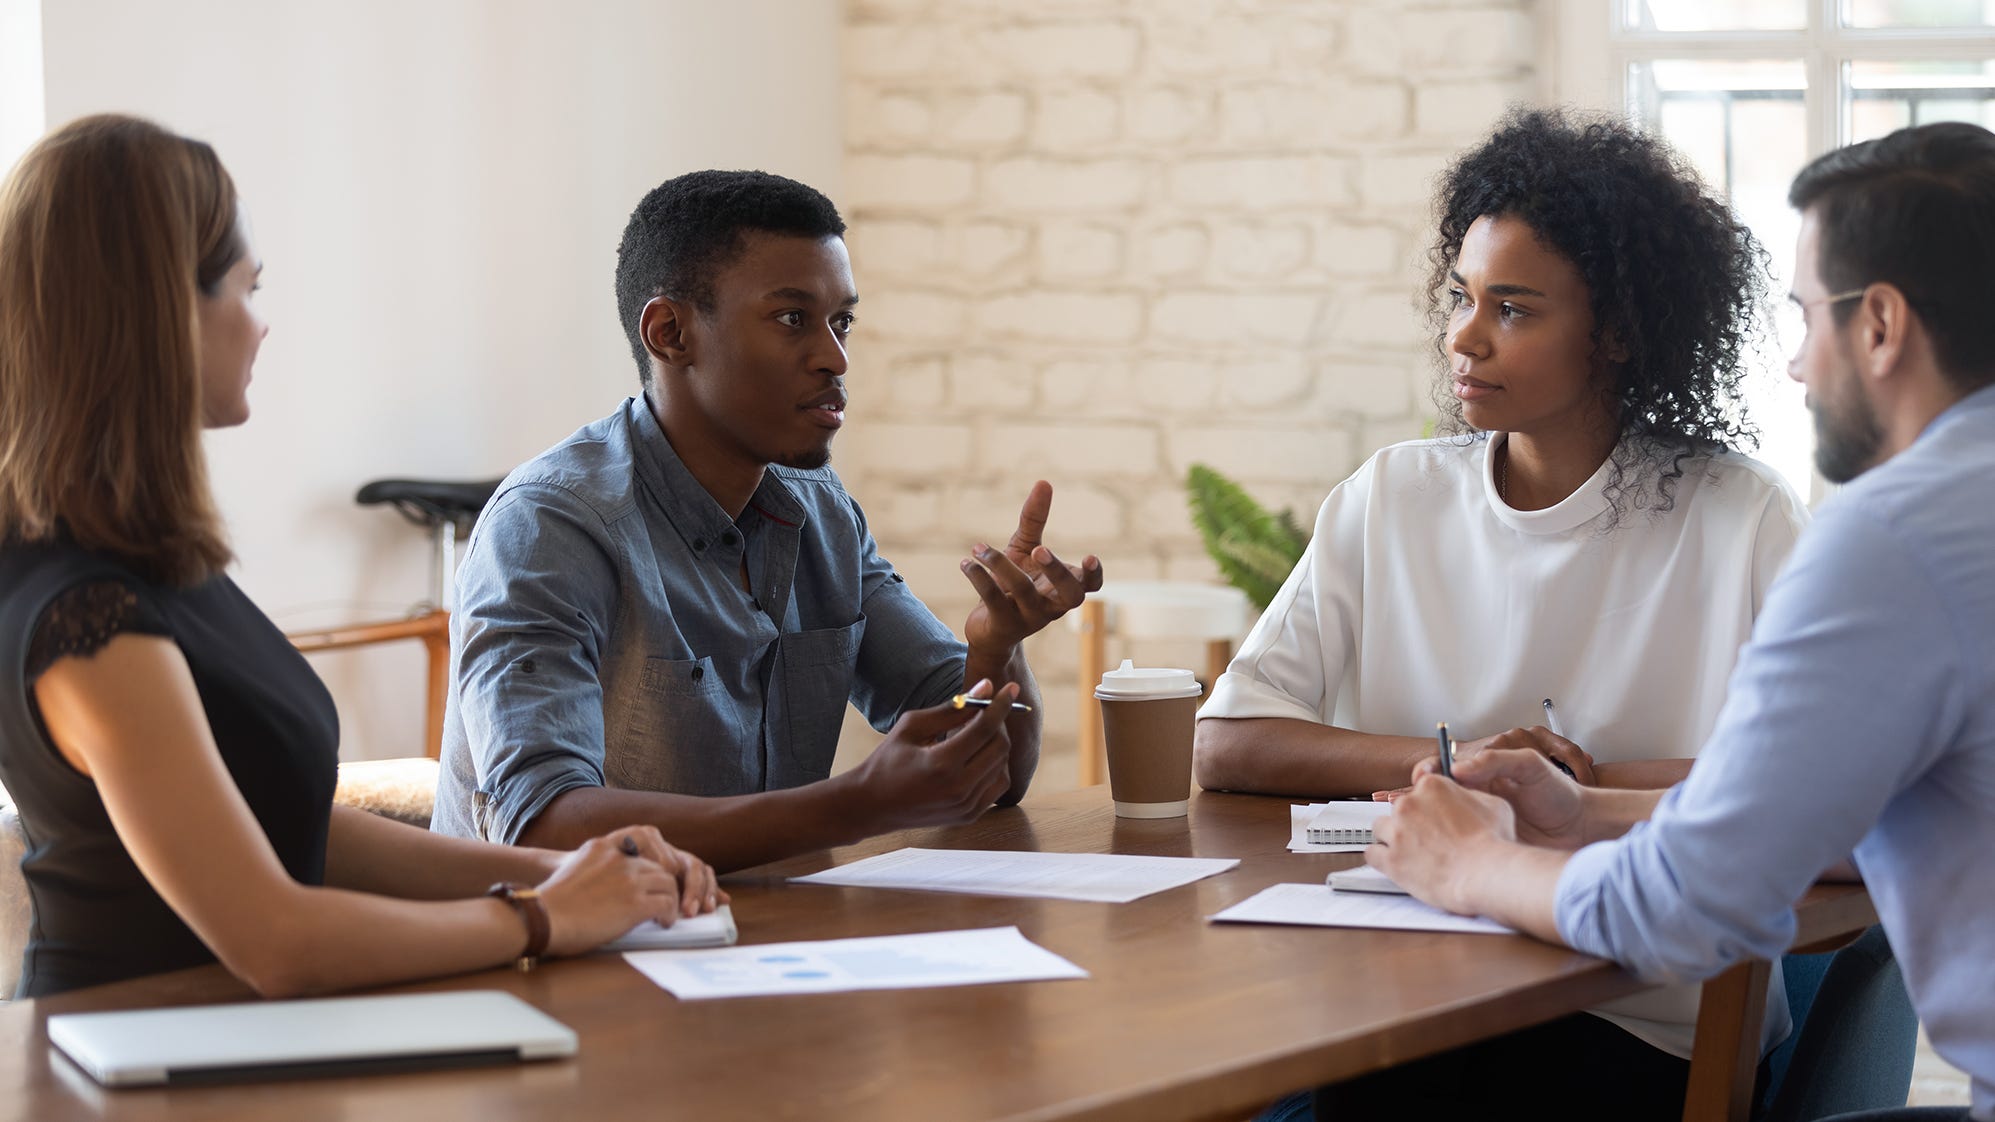 Quatro pessoas em uma mesa durante uma reunião. Uma mulher e um homem brancos, um homem negro falando e uma mulher negra.